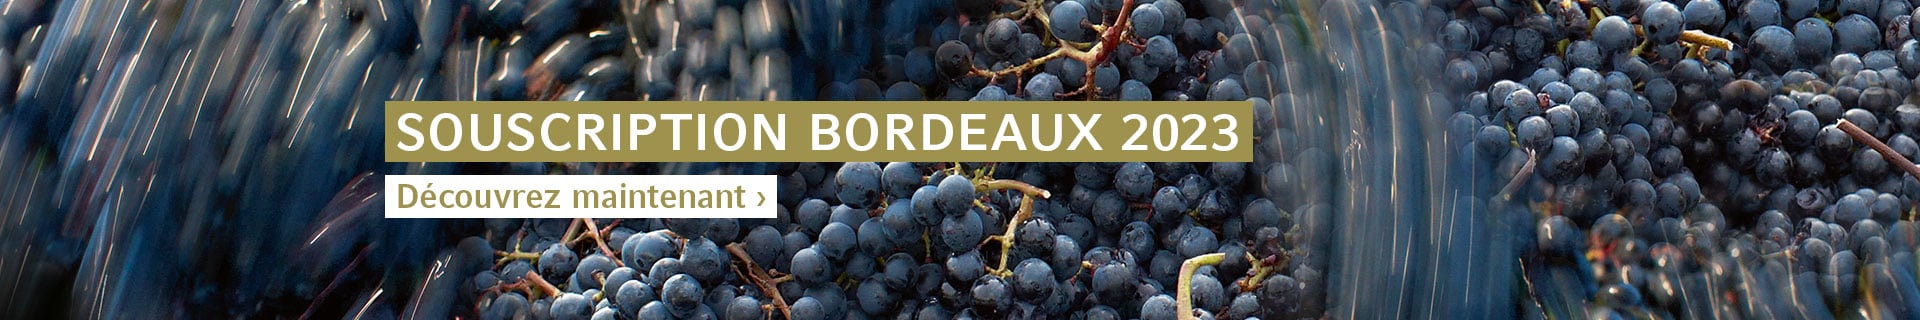 Souscription Bordeaux